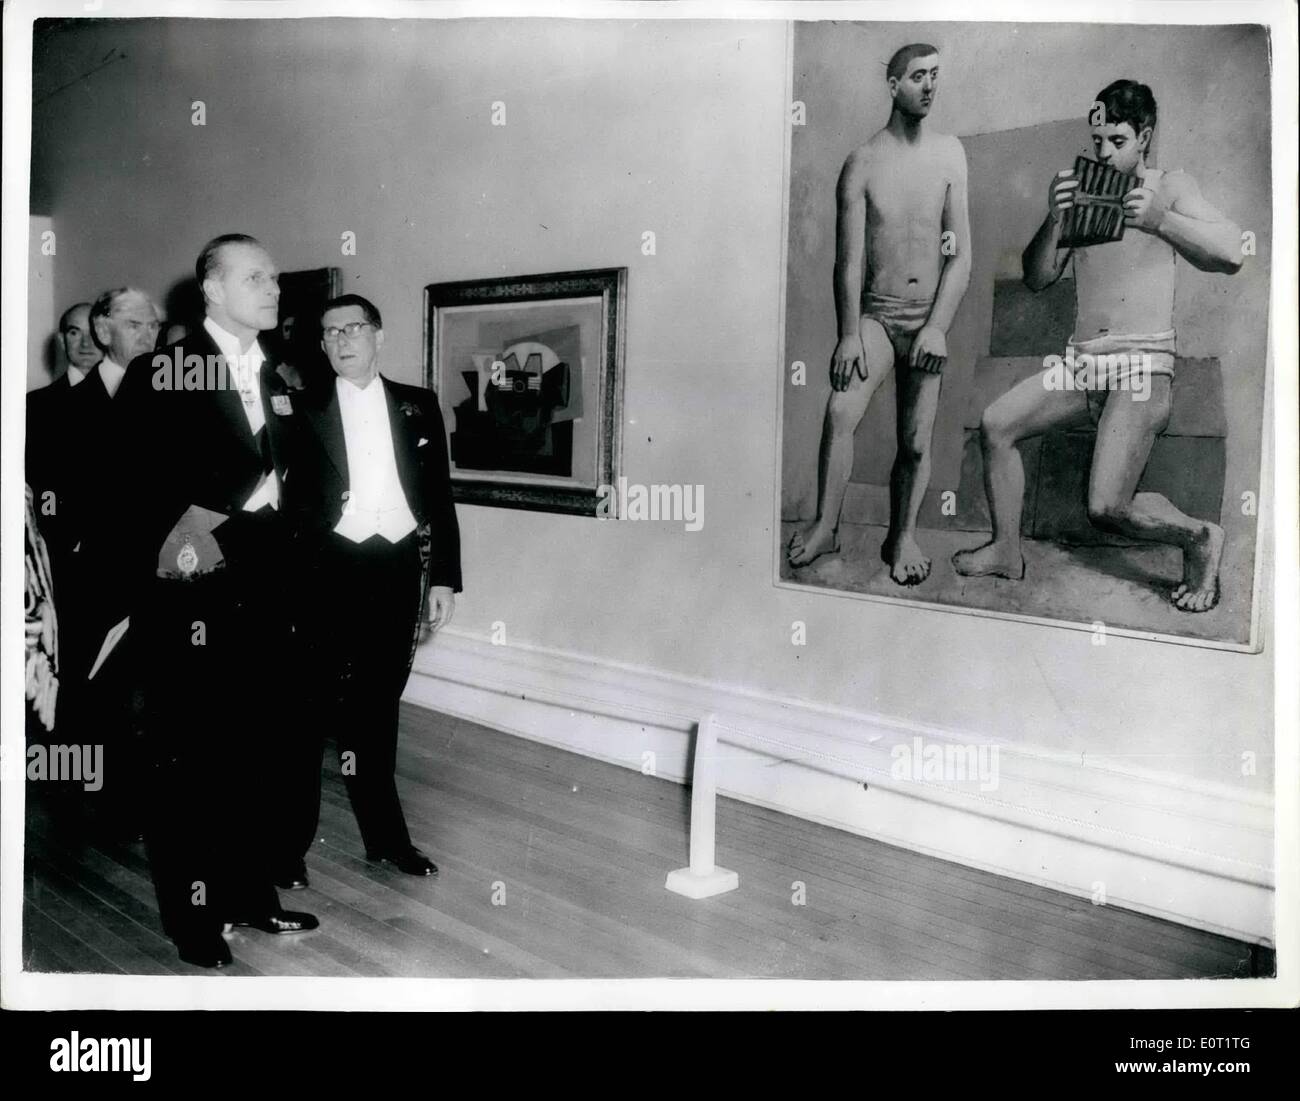 Lug. 07, 1960 - Duke ha anteprima della mostra dedicata a Picasso: il Duca di Edimburgo ha visitato la Tate Gallery ultima sera, dove aveva un'anteprima della mostra di quadri di Picasso. La foto mostra il Duca di Edimburgo scortato circa la mostra dal sig. Roland Penrose (indossando occhiali) - presidente dell'Istituto di Arte Contemporanea. Foto Stock